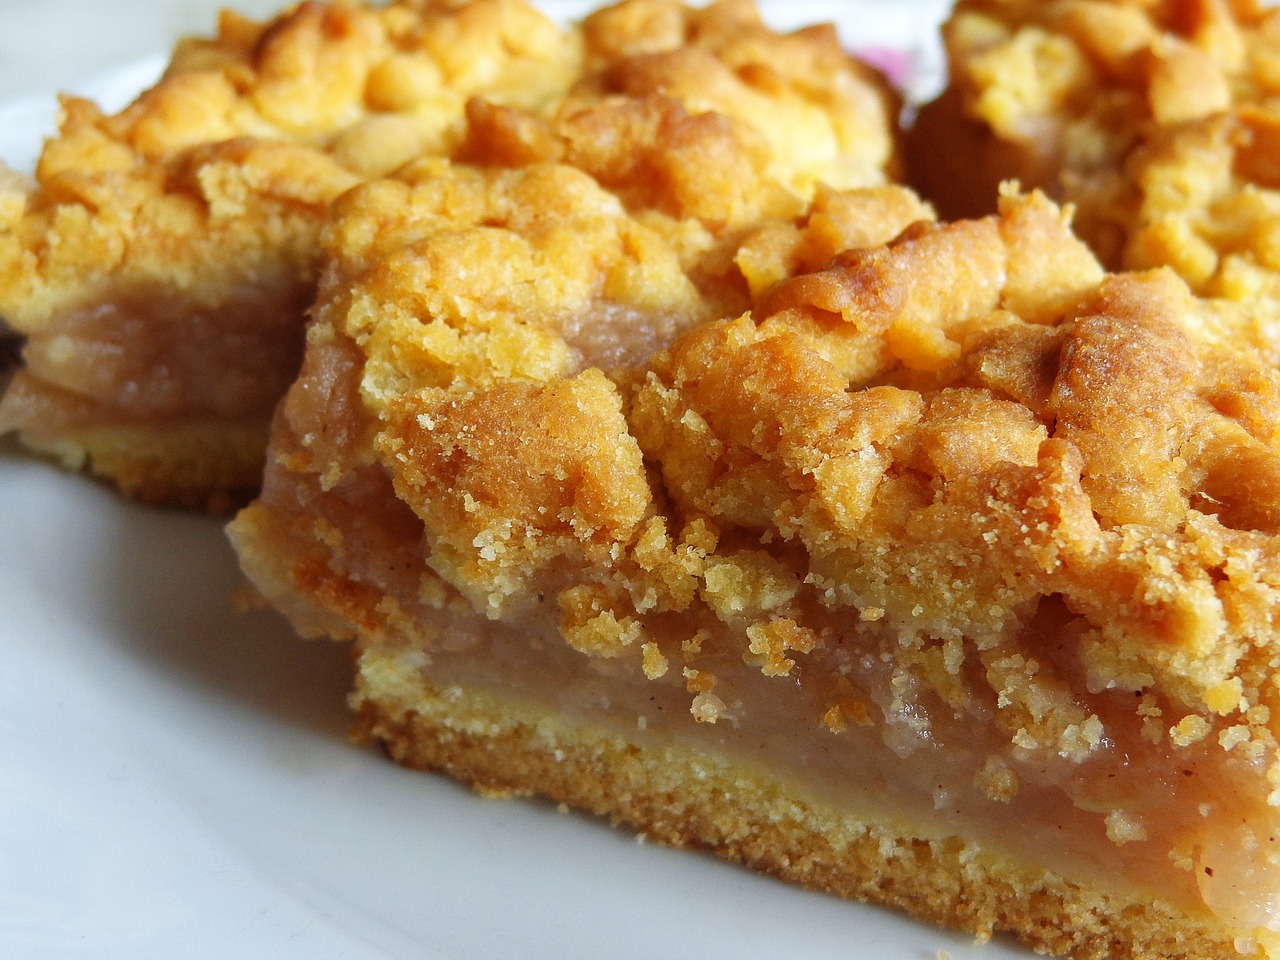 Rețetă fabuloasă: prăjitură cu mere fără aluat. Rapid, simplu și ușor